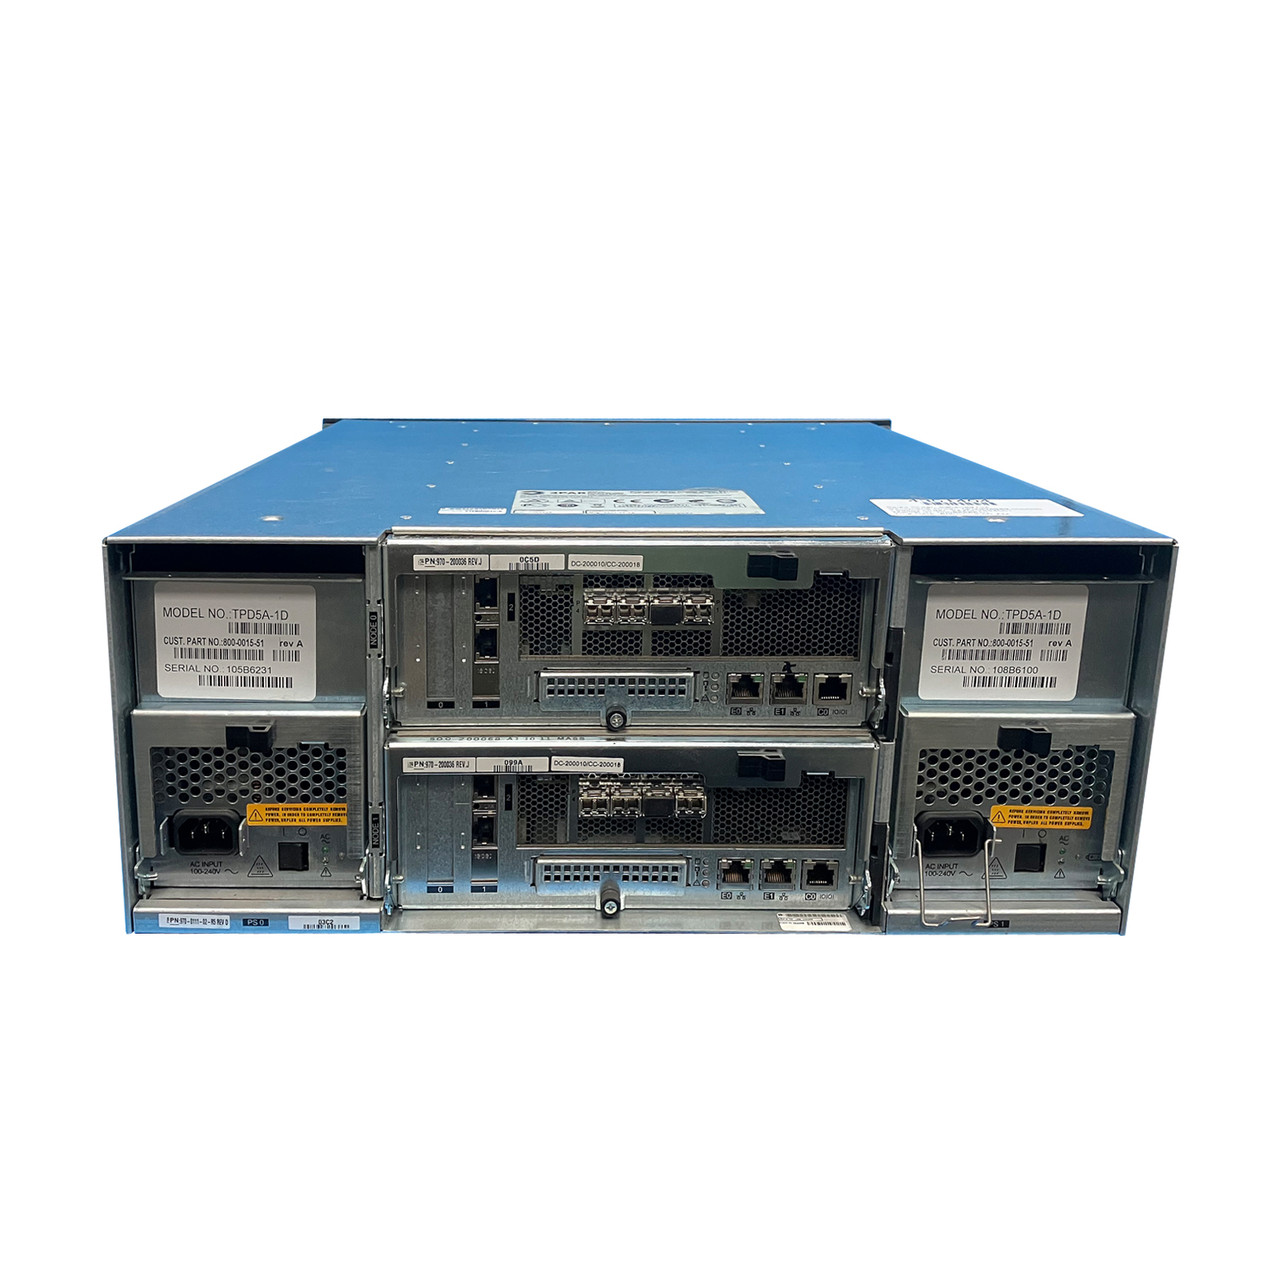 HPe QL226B 3Par F200 Configuration Base System